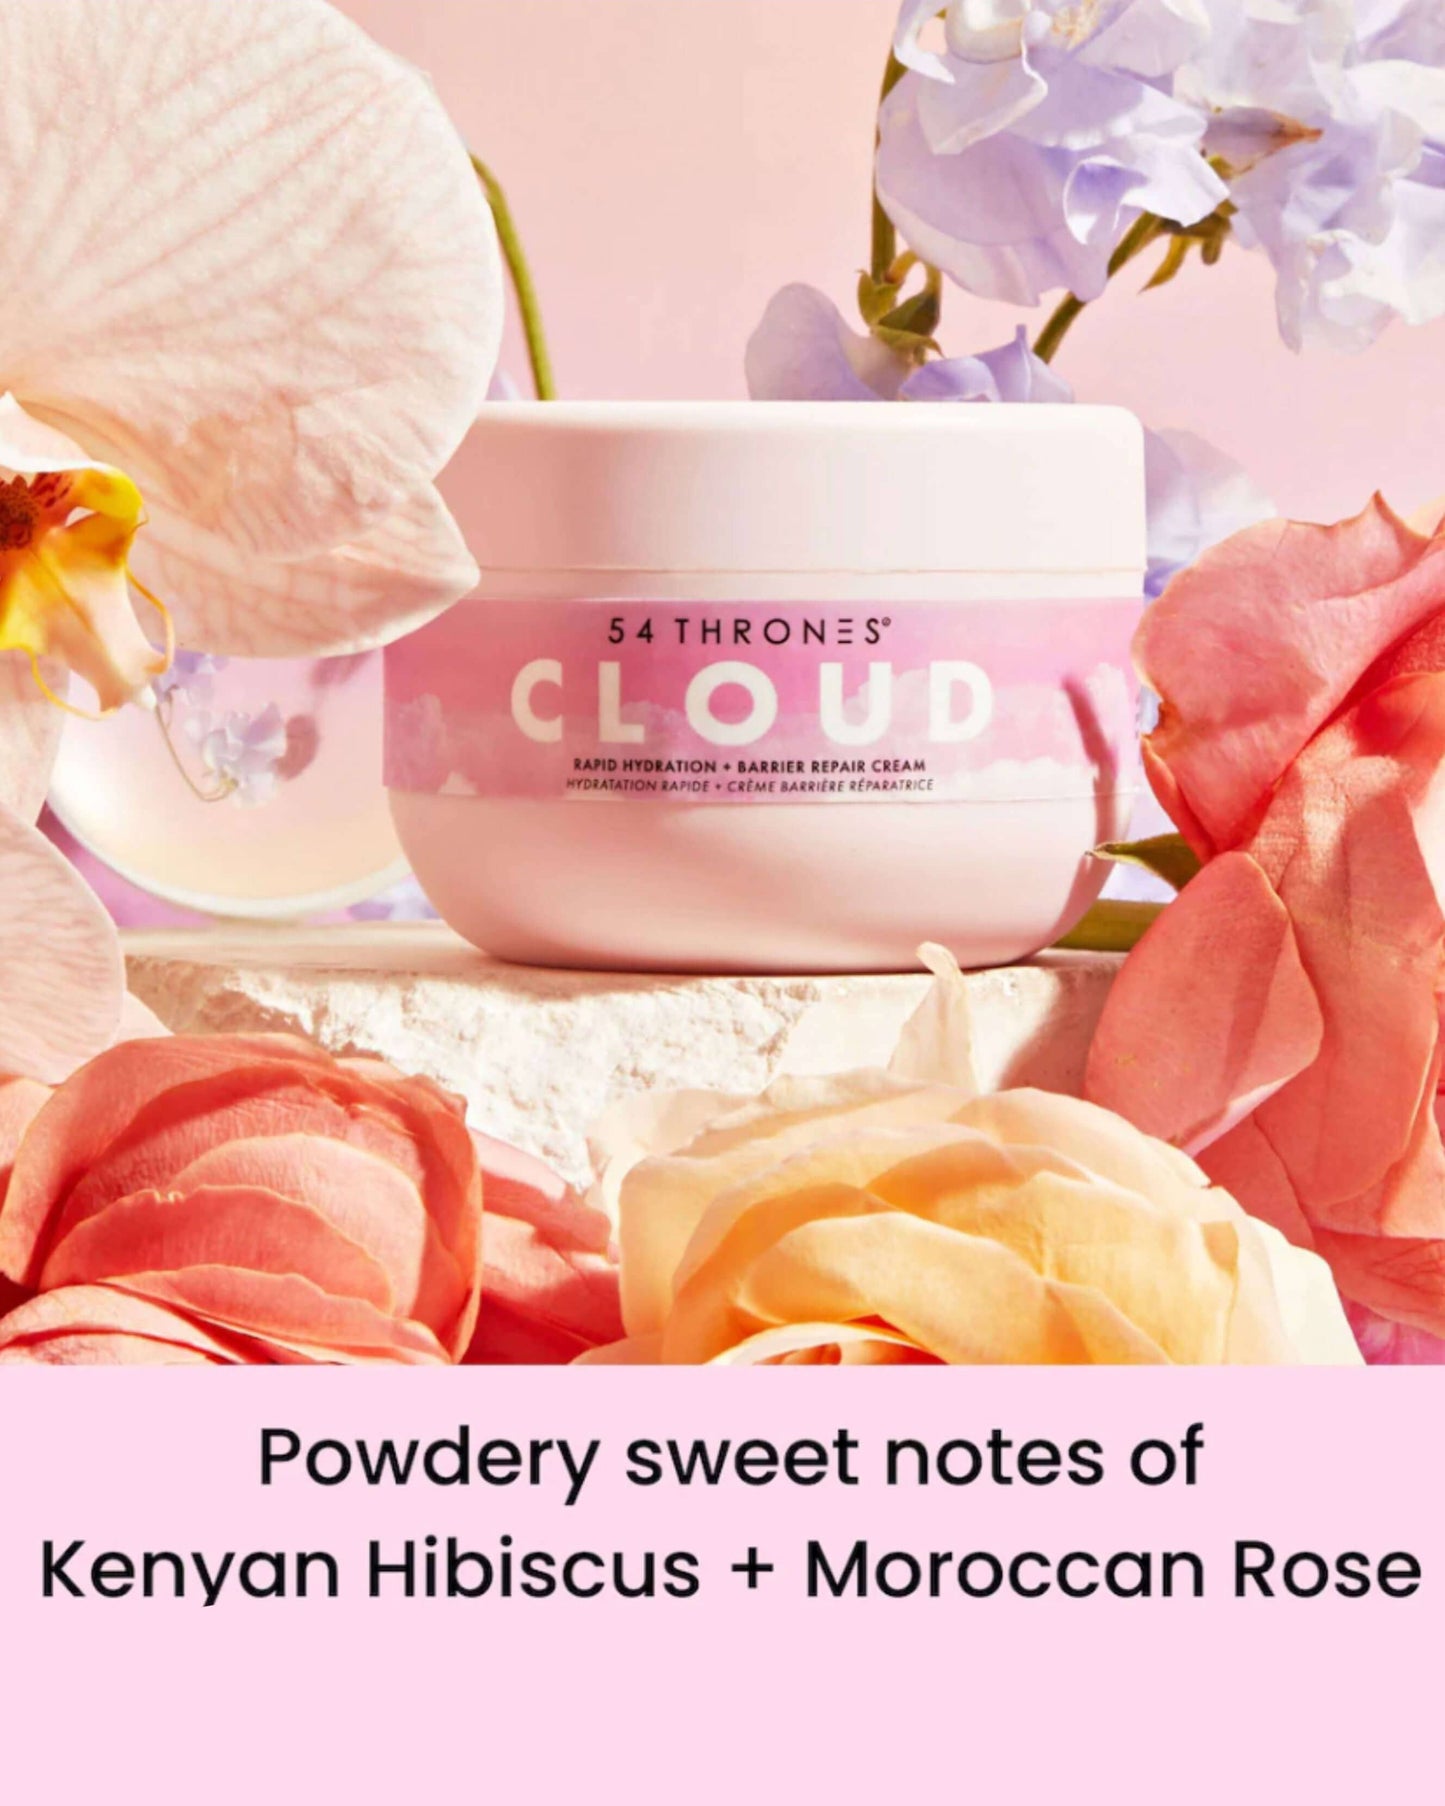 Kenyan Hibiscus + Moroccan Rose